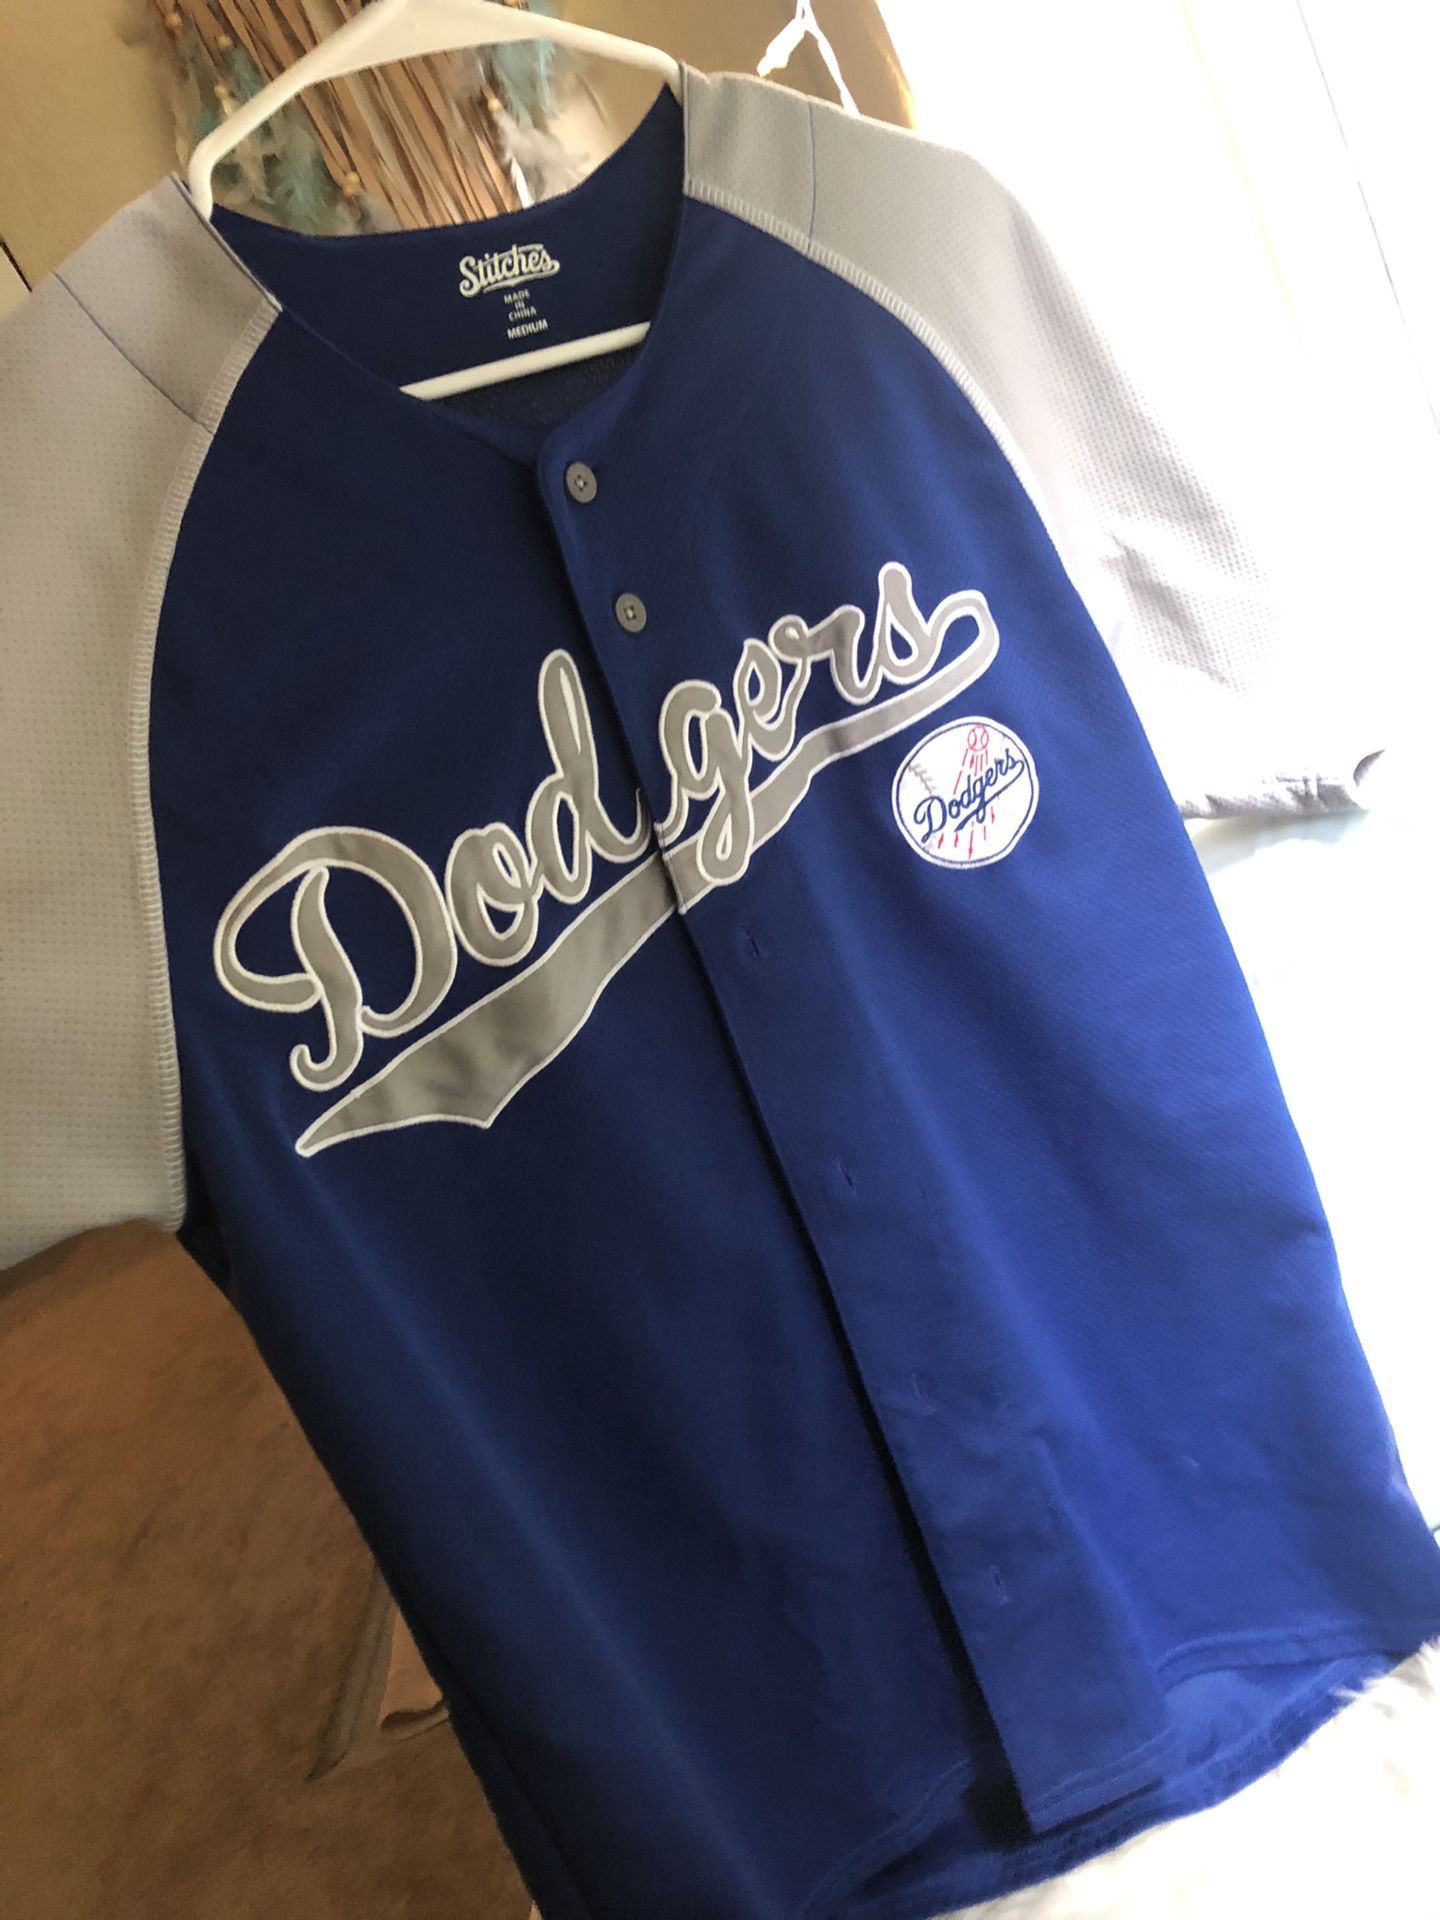 Dodgers original baseball jersey !!!! Brand new